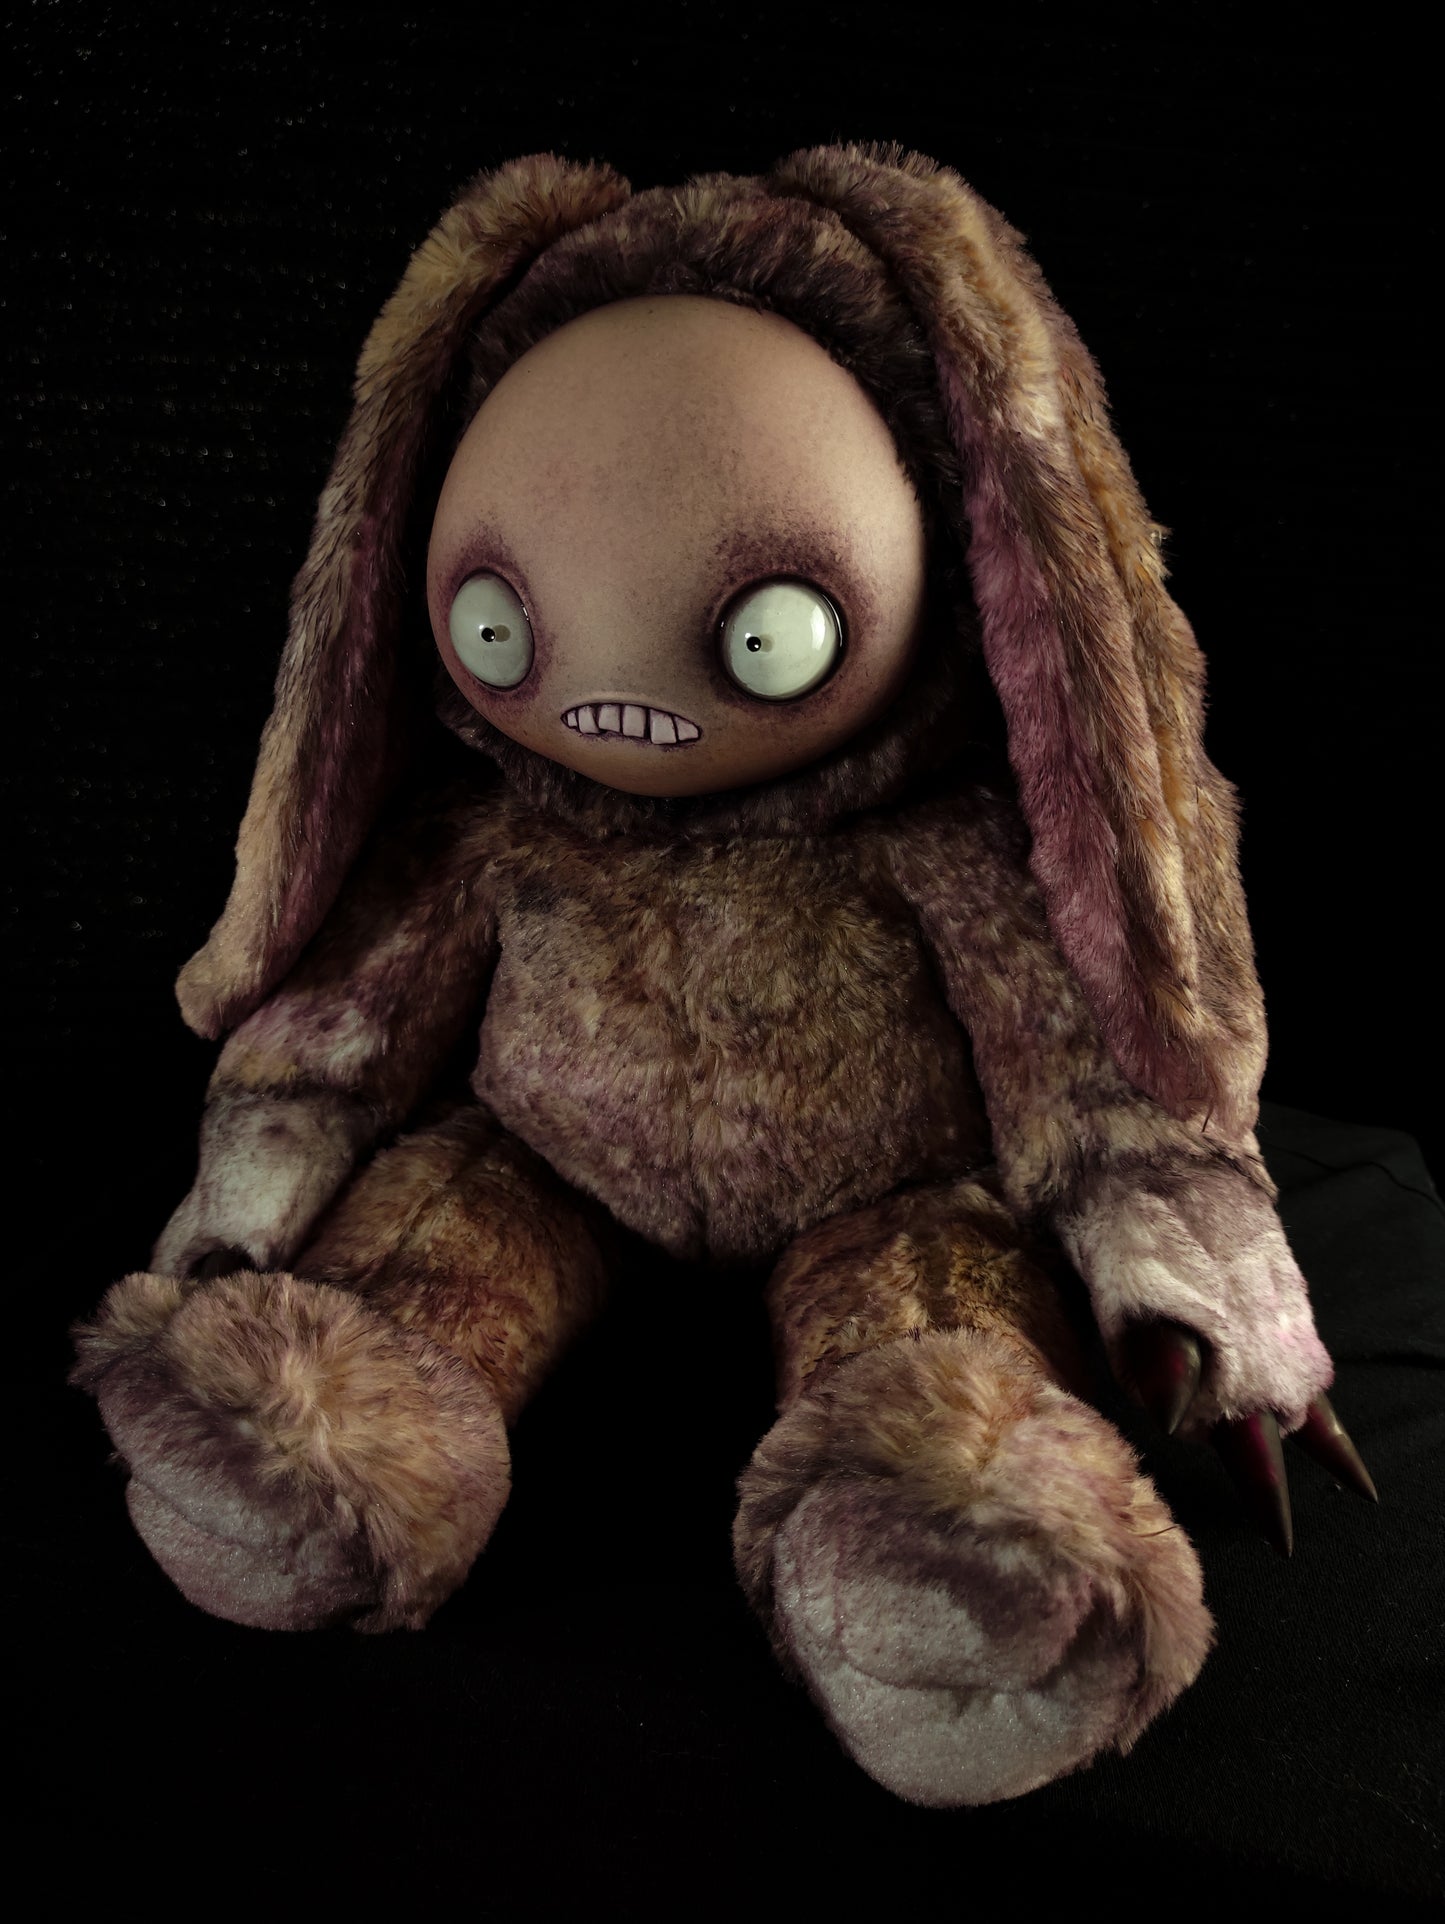 Jitters (Hippity Hoppity Ver.) - Monster Art Doll Plush Toy